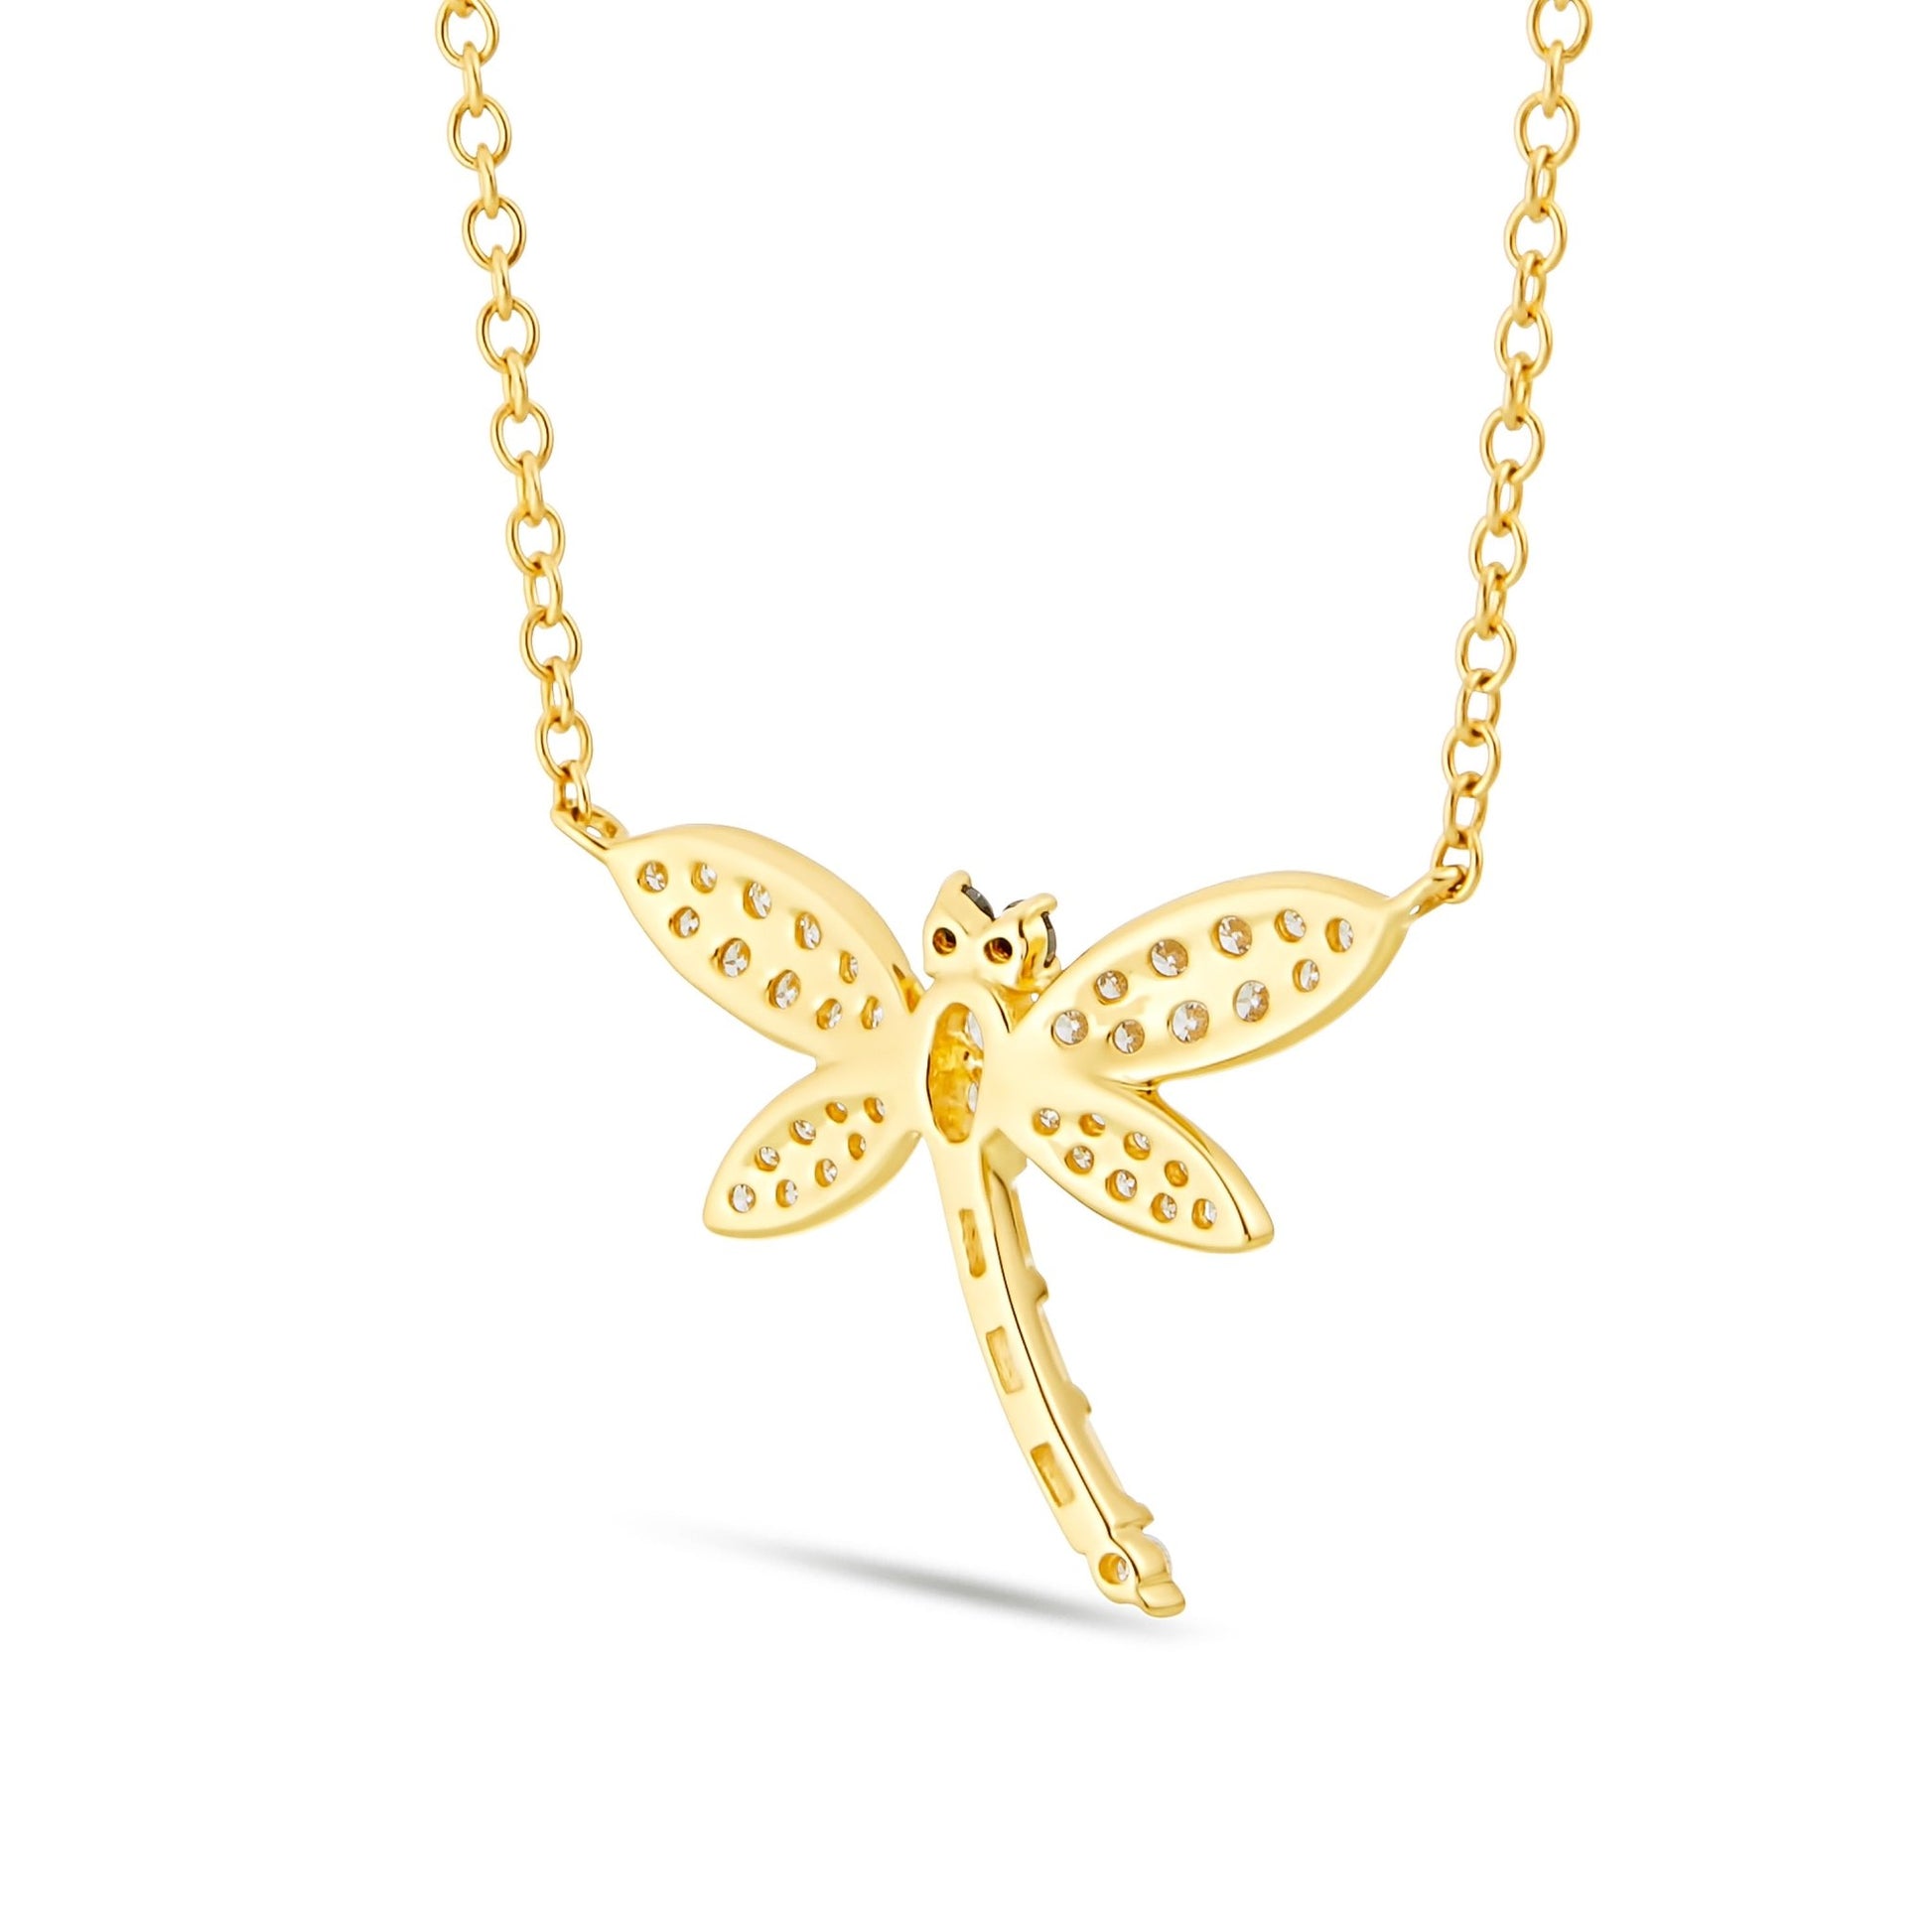 Dragonfly Black Eyes Diamond Necklace - Shyne Jewelers 165-00173 Shyne Jewelers